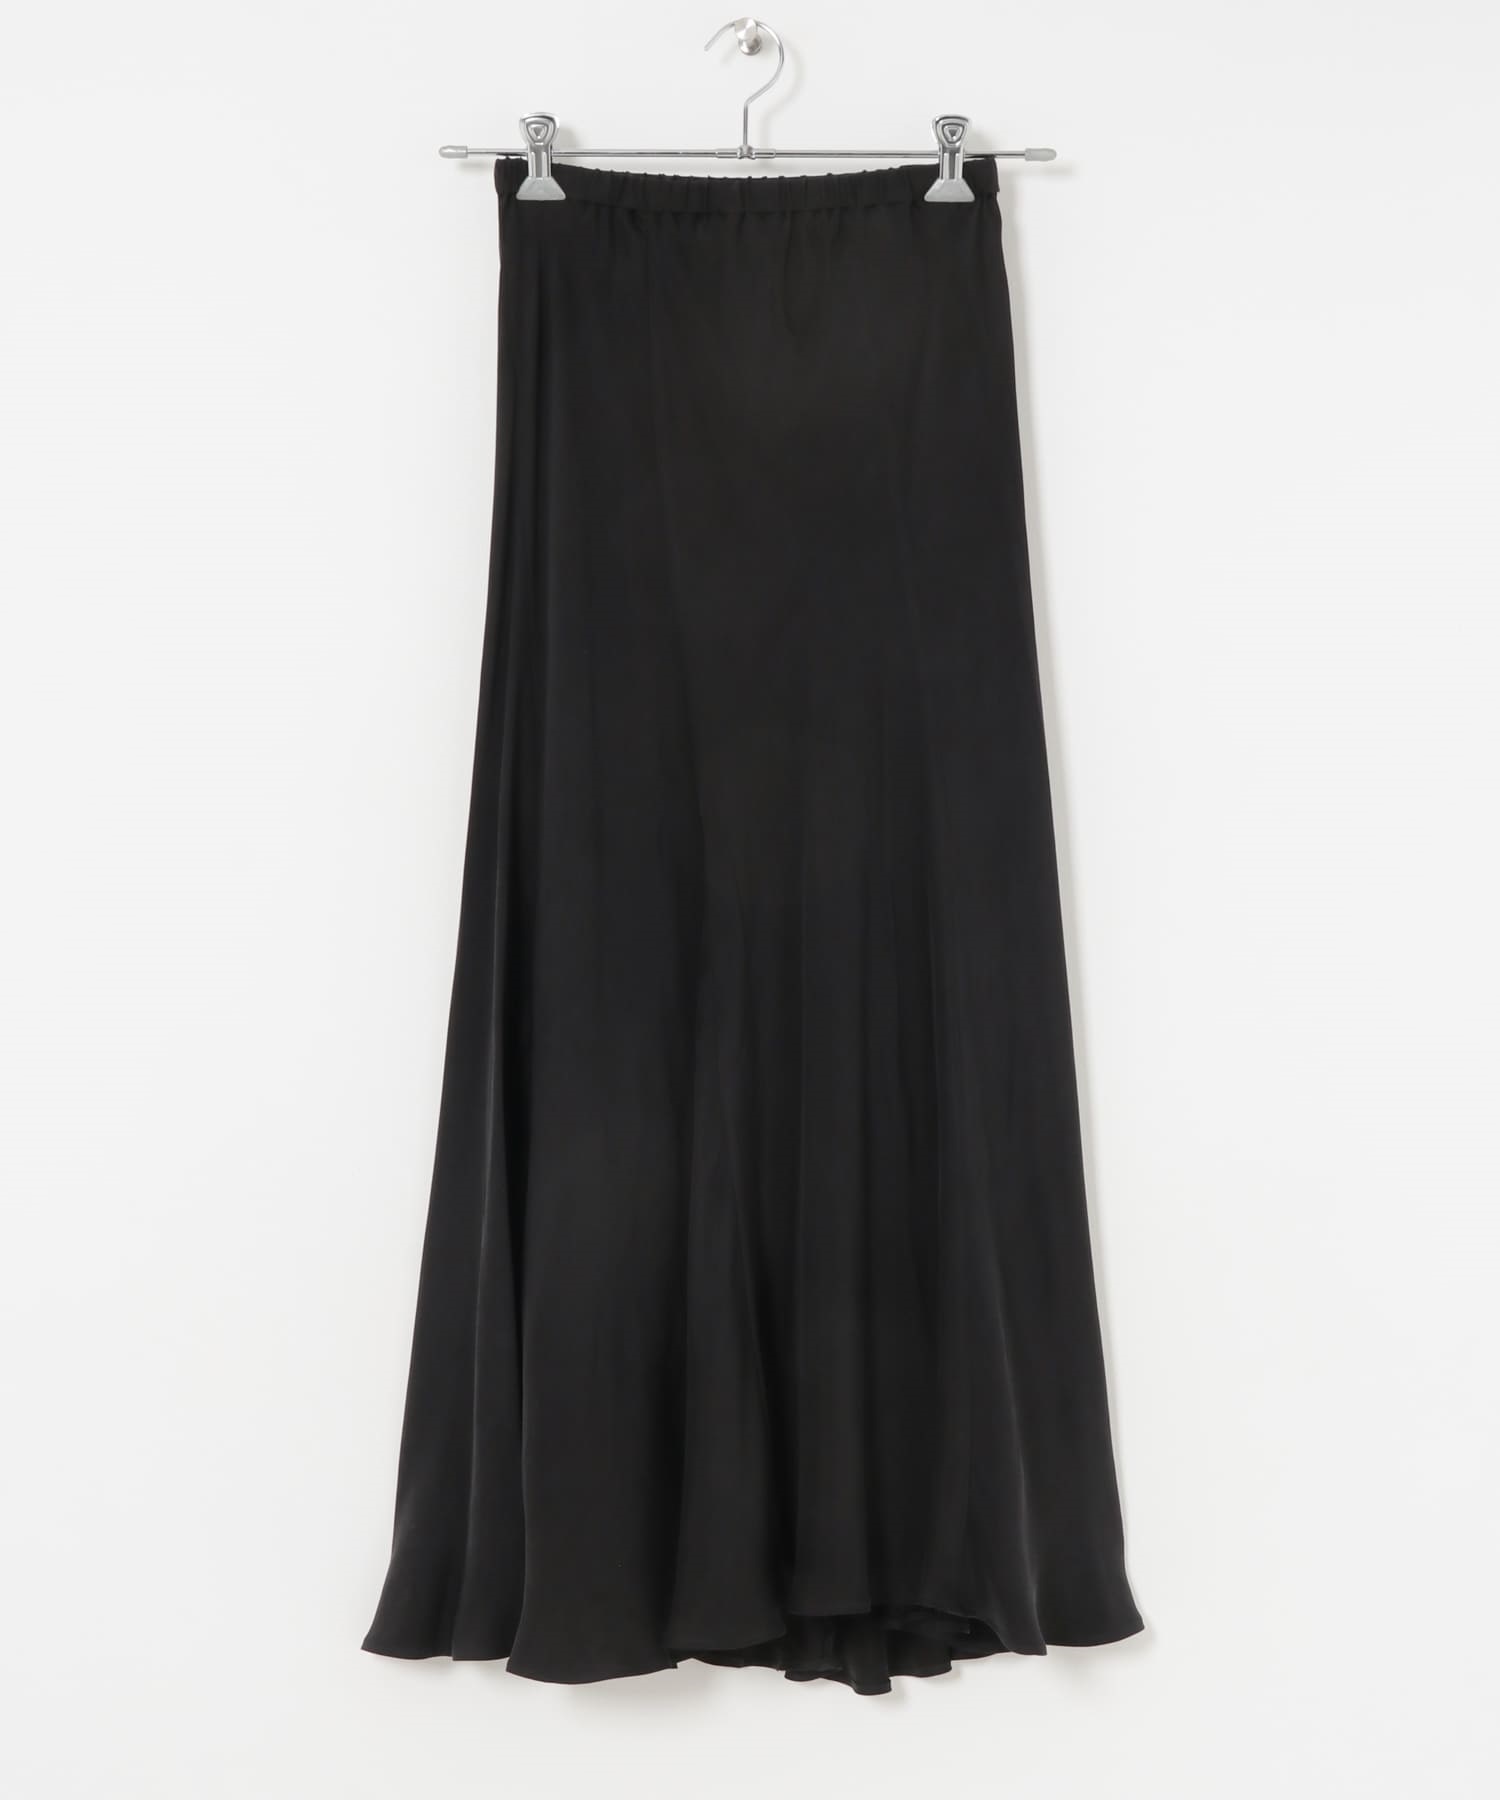 銅氨纖維斜裁傘狀裙(黑色-FREE-BLACK)